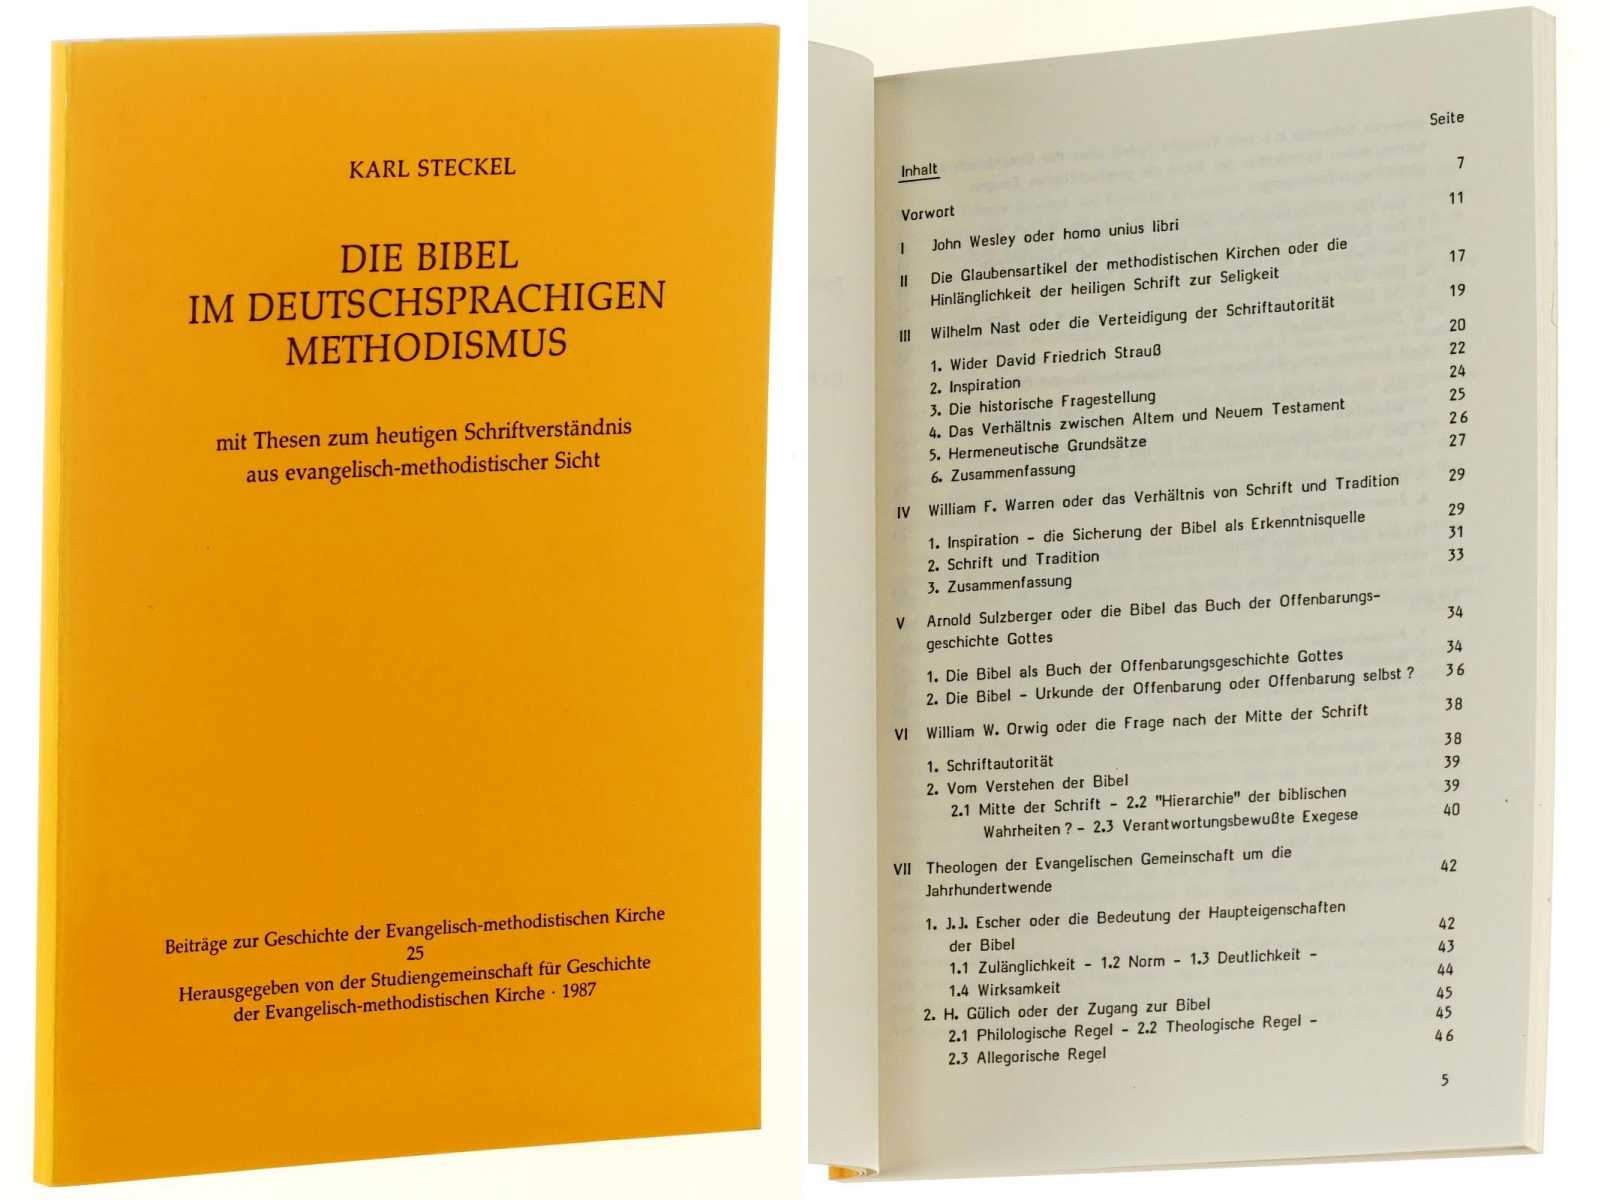 Steckel, Karl:  Die Bibel im deutschsprachigen Methodismus. Mit Thesen zum heutigen Schriftverständnis aus evangelisch-methodistischer Sicht. 